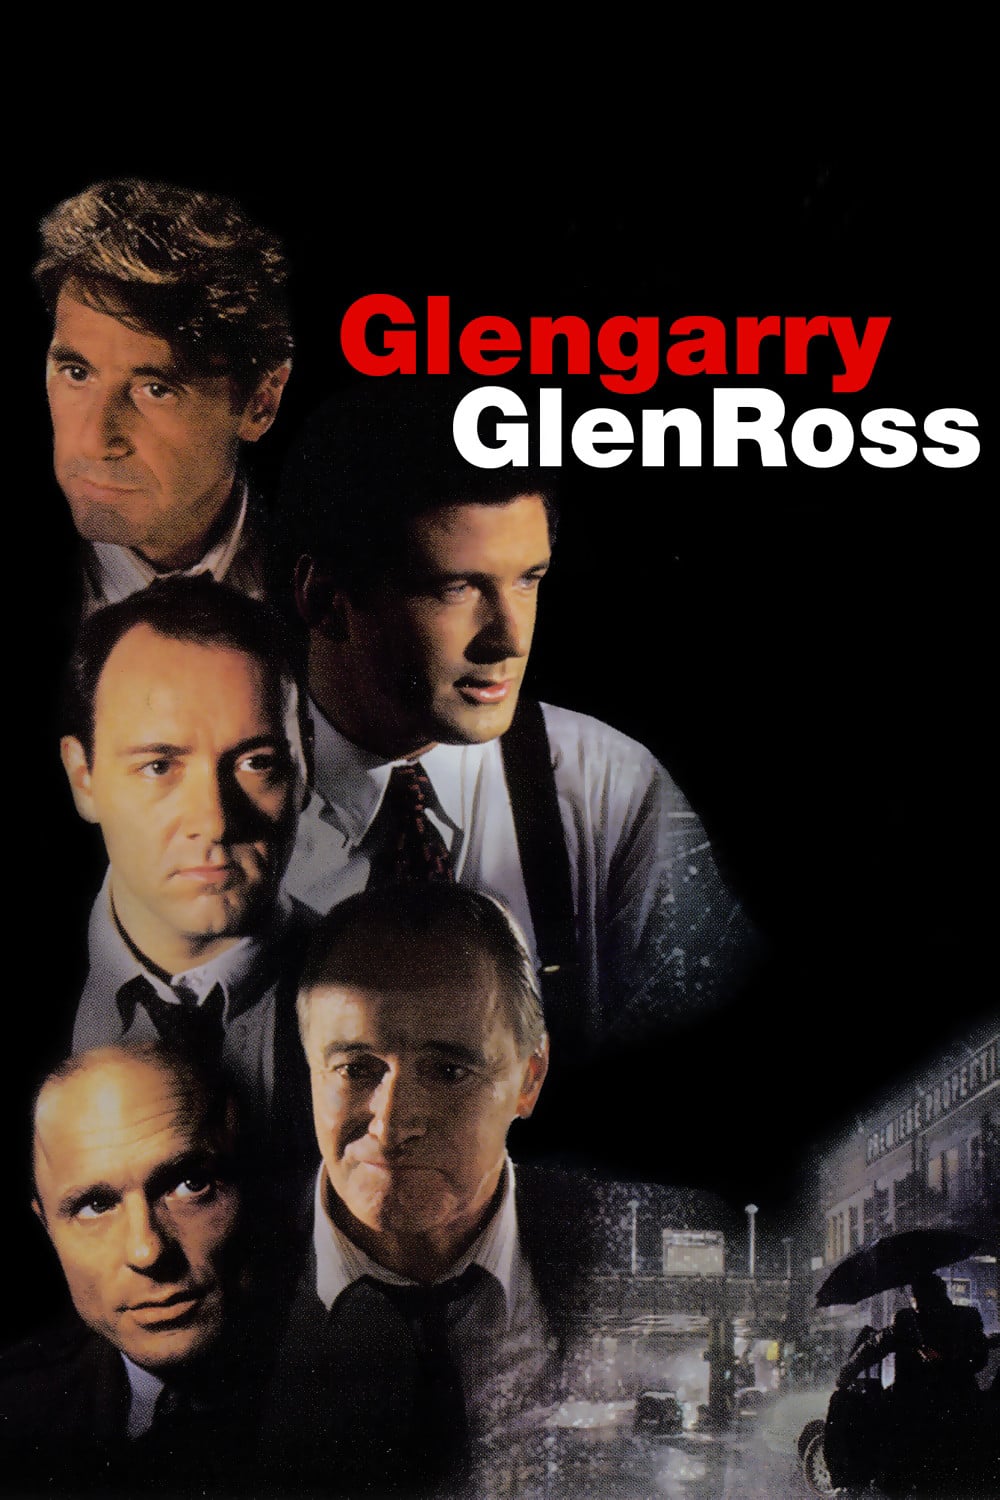 Poster for the movie "Glengarry Glen Ross"